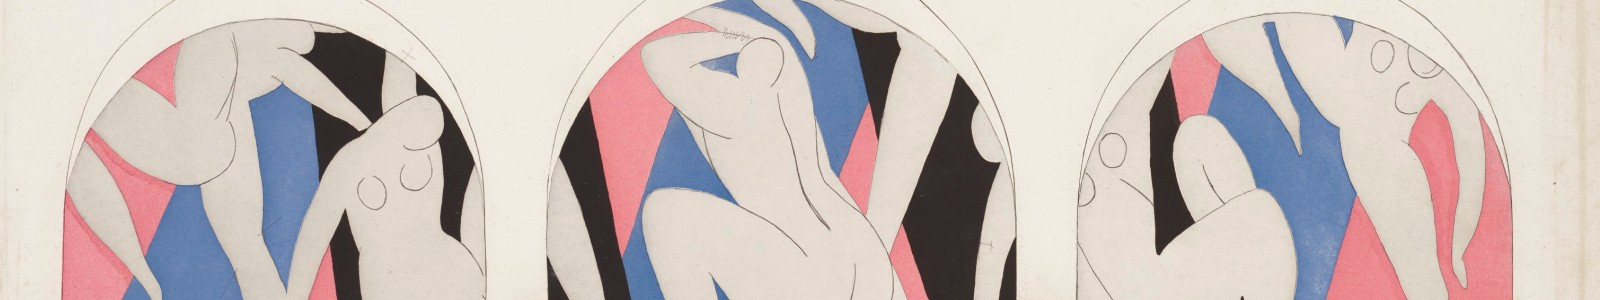 Matisse sur papier: Estampes et dessins de la succession de Jacquelyn Miller Matisse